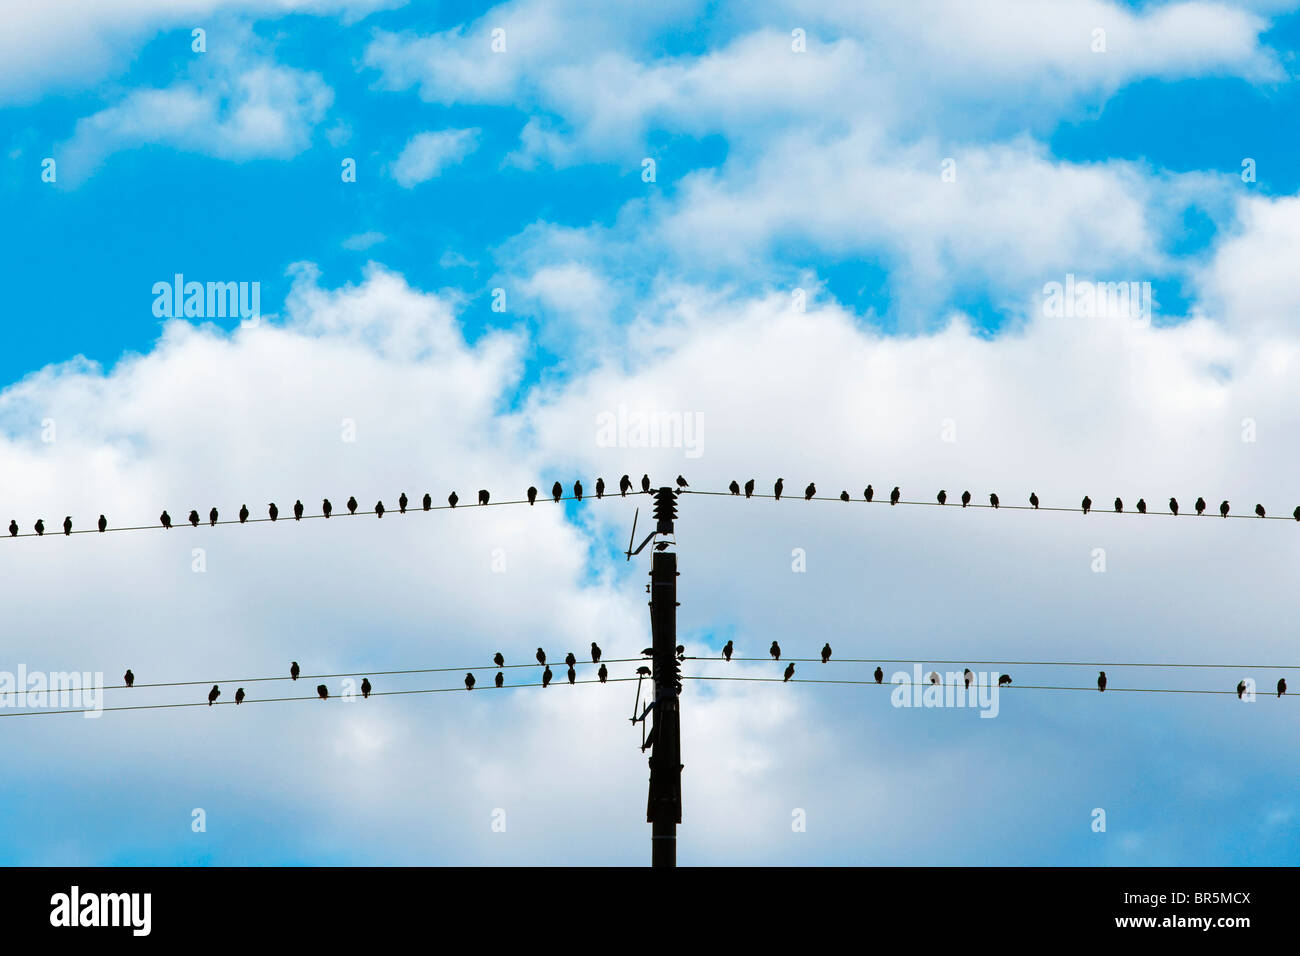 Oiseaux assis sur les fils d'électricité - Ciel bleu et nuages blancs Banque D'Images